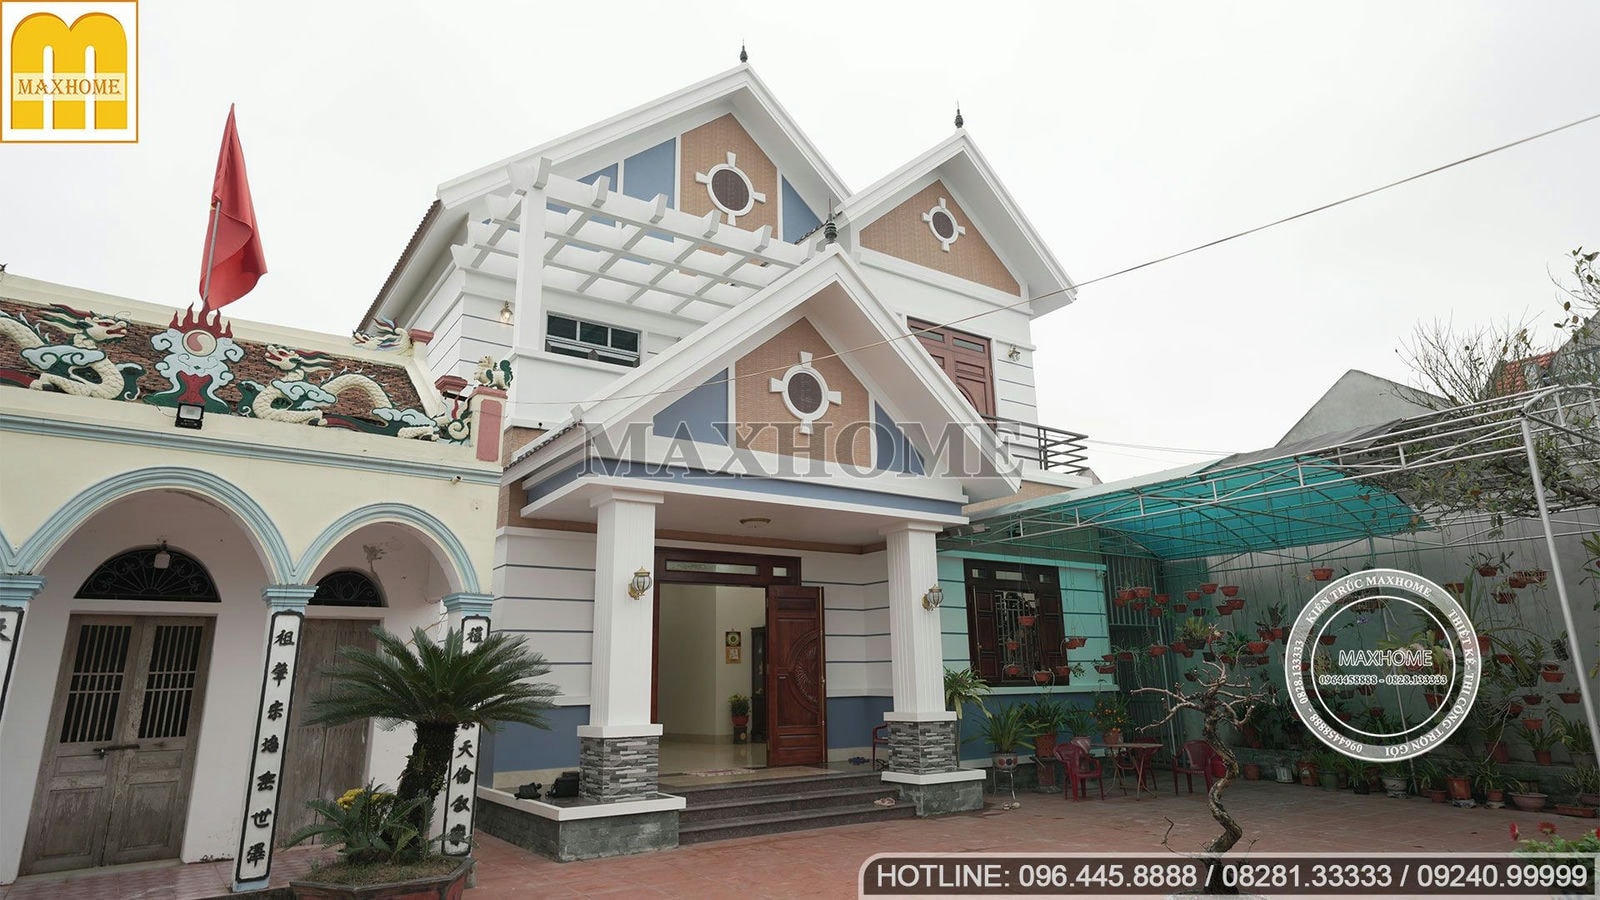 Mẫu nhà mái Thái nguy nga, tráng lệ tại Nam Định với ngoại thất bắt mắt